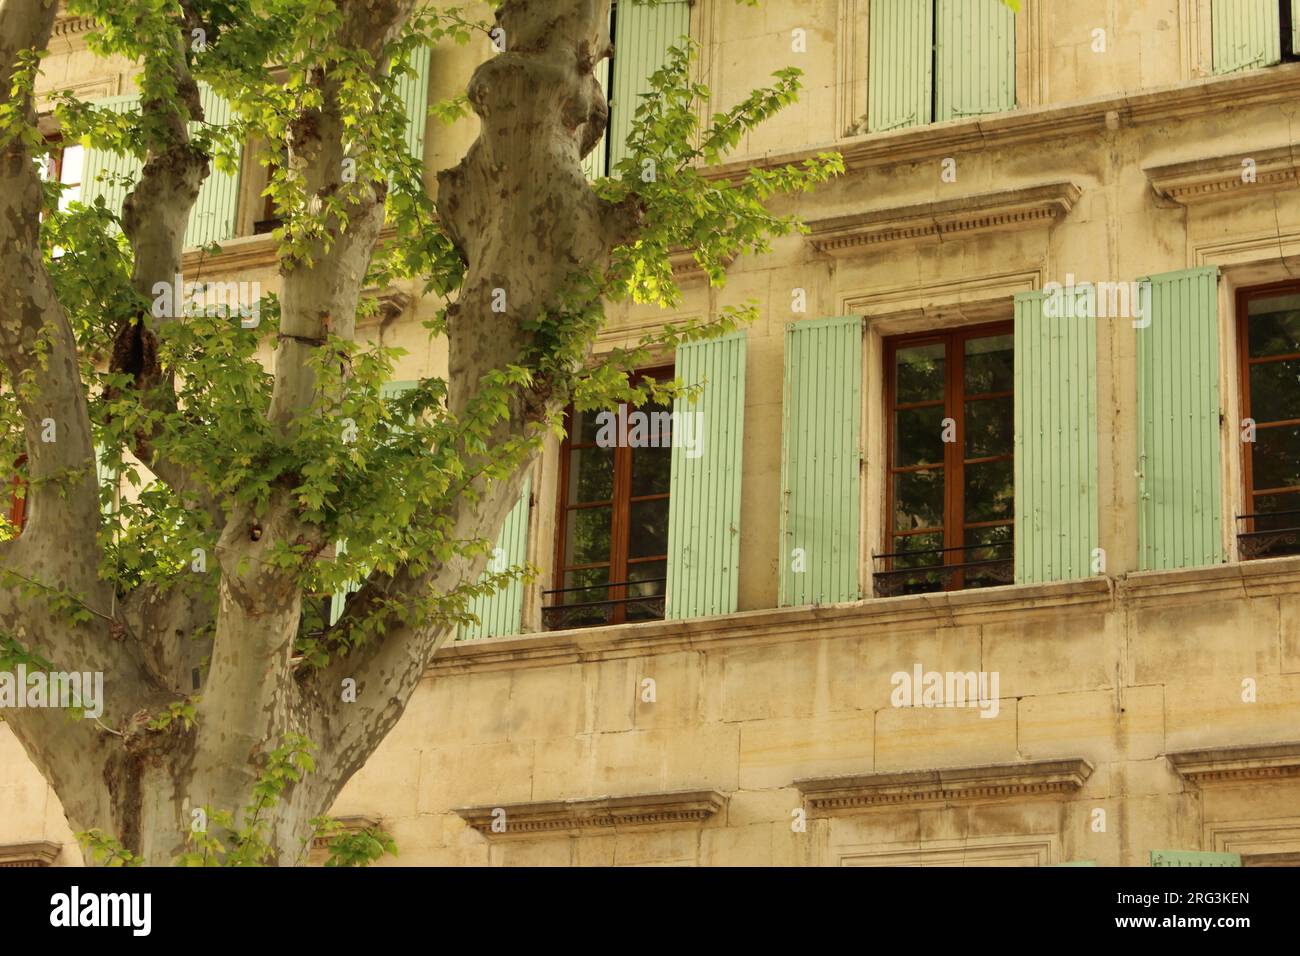 Arancio, Vaucluse, Francia - albero di sicomoro Pollarded con persiane provenzali turchesi chiare dietro Foto Stock